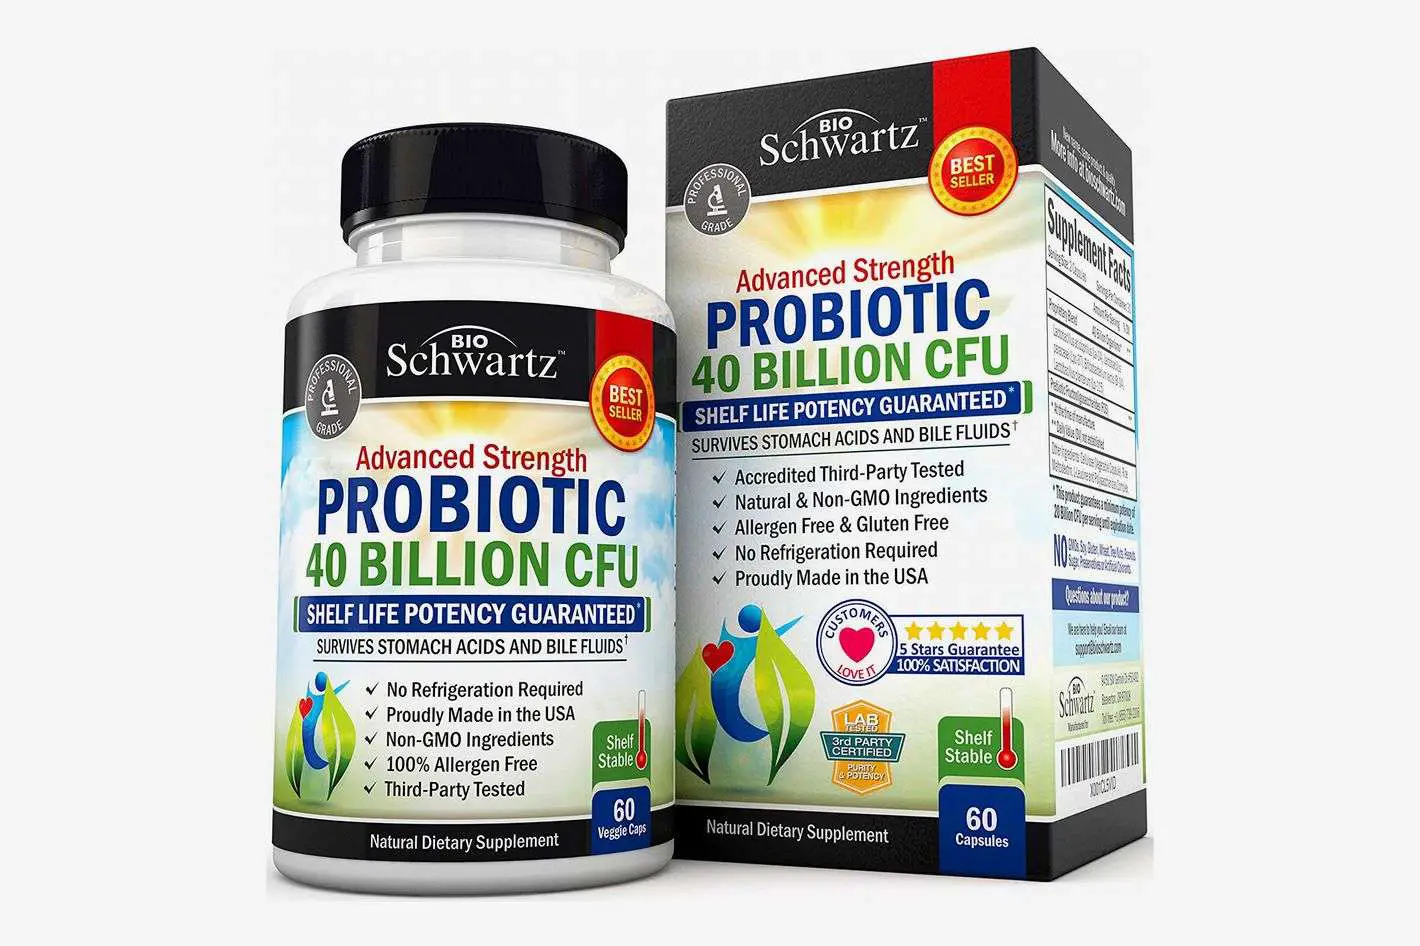 9 Best Probiotic and Prebiotic Supplements 2018